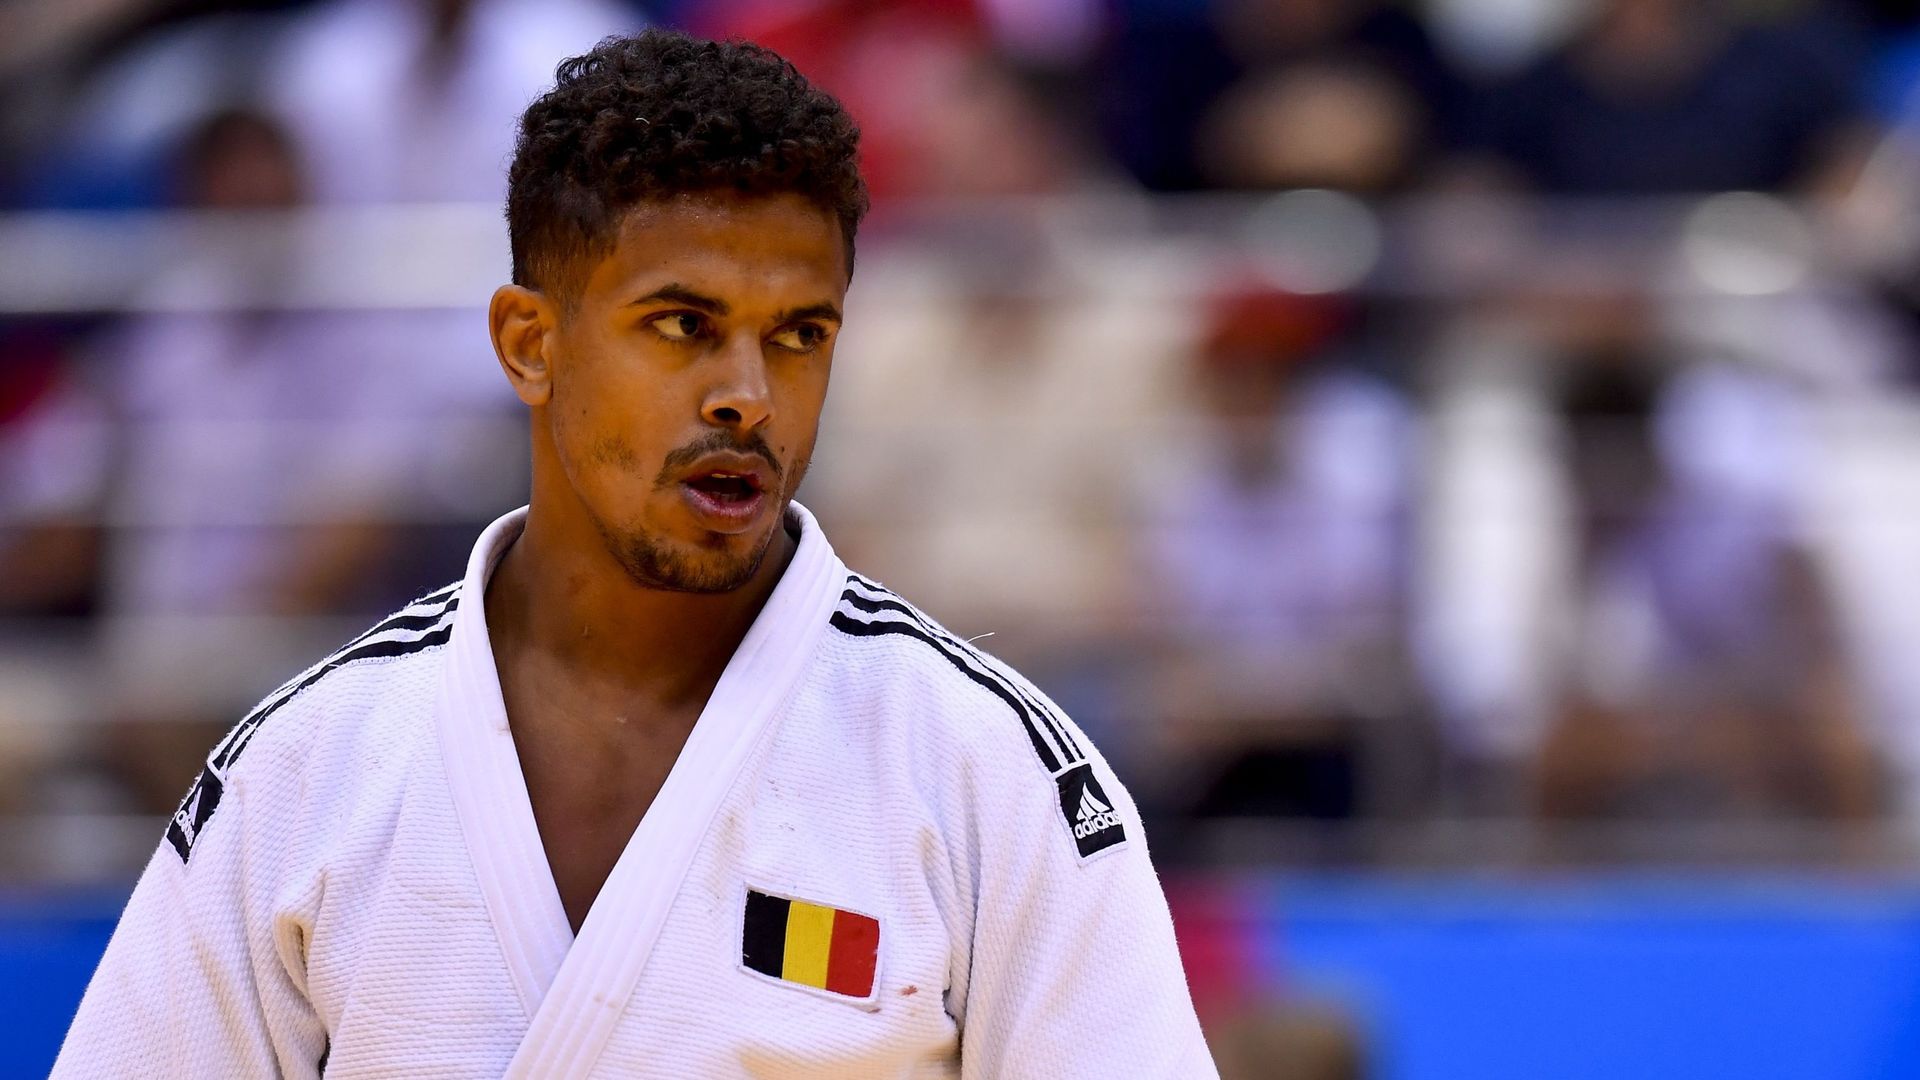 Le judoka belge, Sami Chouchi monte en -90kg pour tenter de vivre son rêve olympique